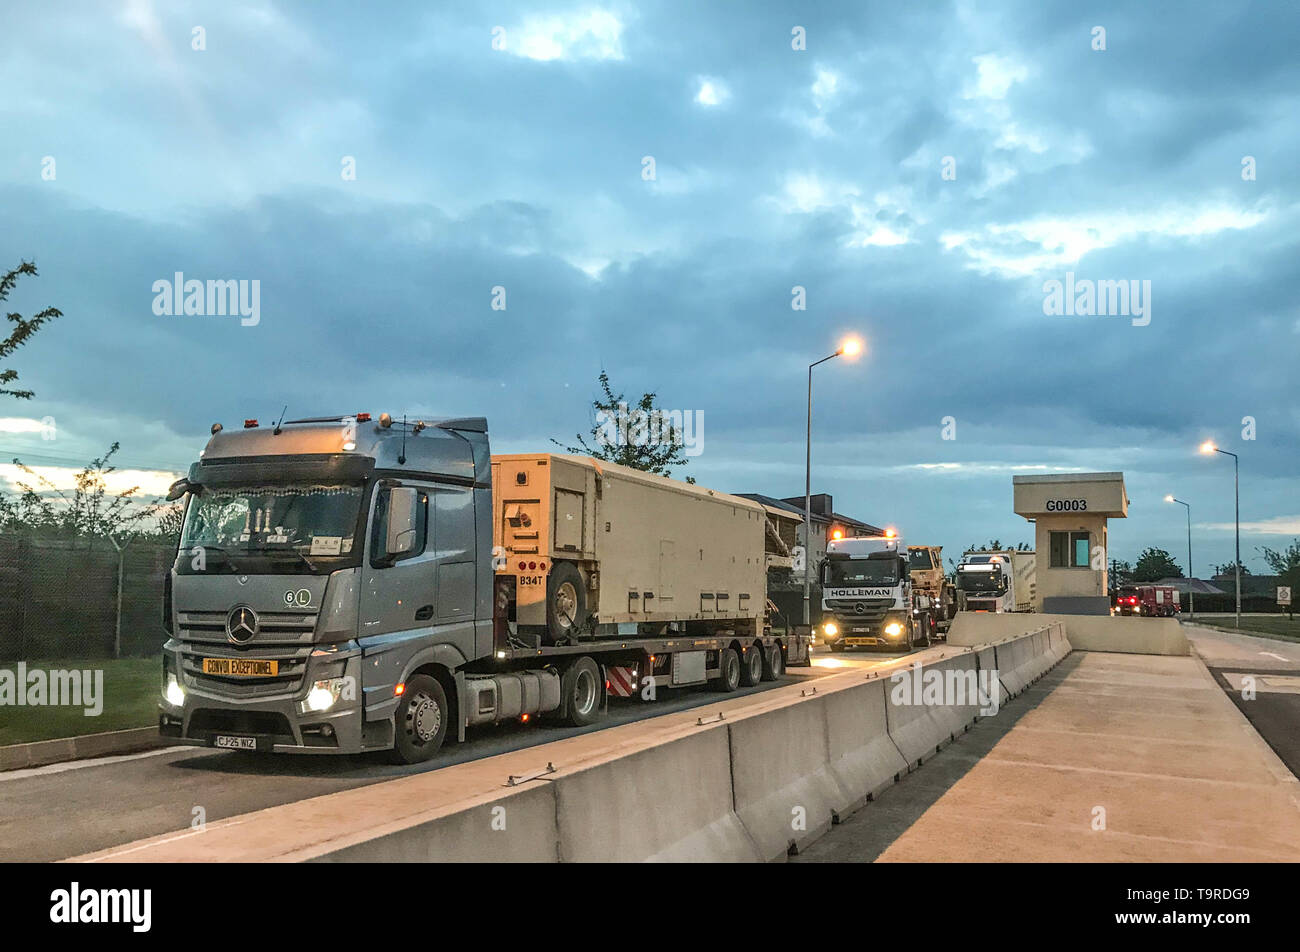 MIHAIL KOGALNICEANU (MC) AIR BASE, ROMANIA - un convoglio di camion rumeno che trasportano un terminale ad alta area Altitudine Difesa (THAAD) sistema interceptor lasciare Mihail Kogalniceanu (MC) Air Base, Romania, in rotta verso il supporto navale Facility Deveselu, la Romania può 10. Il 400-chilometro convoglio fu la più lunga del sistema THAAD ha viaggiato su strada al di fuori degli Stati Uniti continentali La distribuzione del THAAD è a sostegno della NATO contro i missili balistici di missione di difesa e rinforza il forte e incessante impegno degli Stati Uniti per la difesa dei nostri alleati della NATO. (Foto di U.S. Esercito Sgt Master. James Redd, 174MA Foto Stock